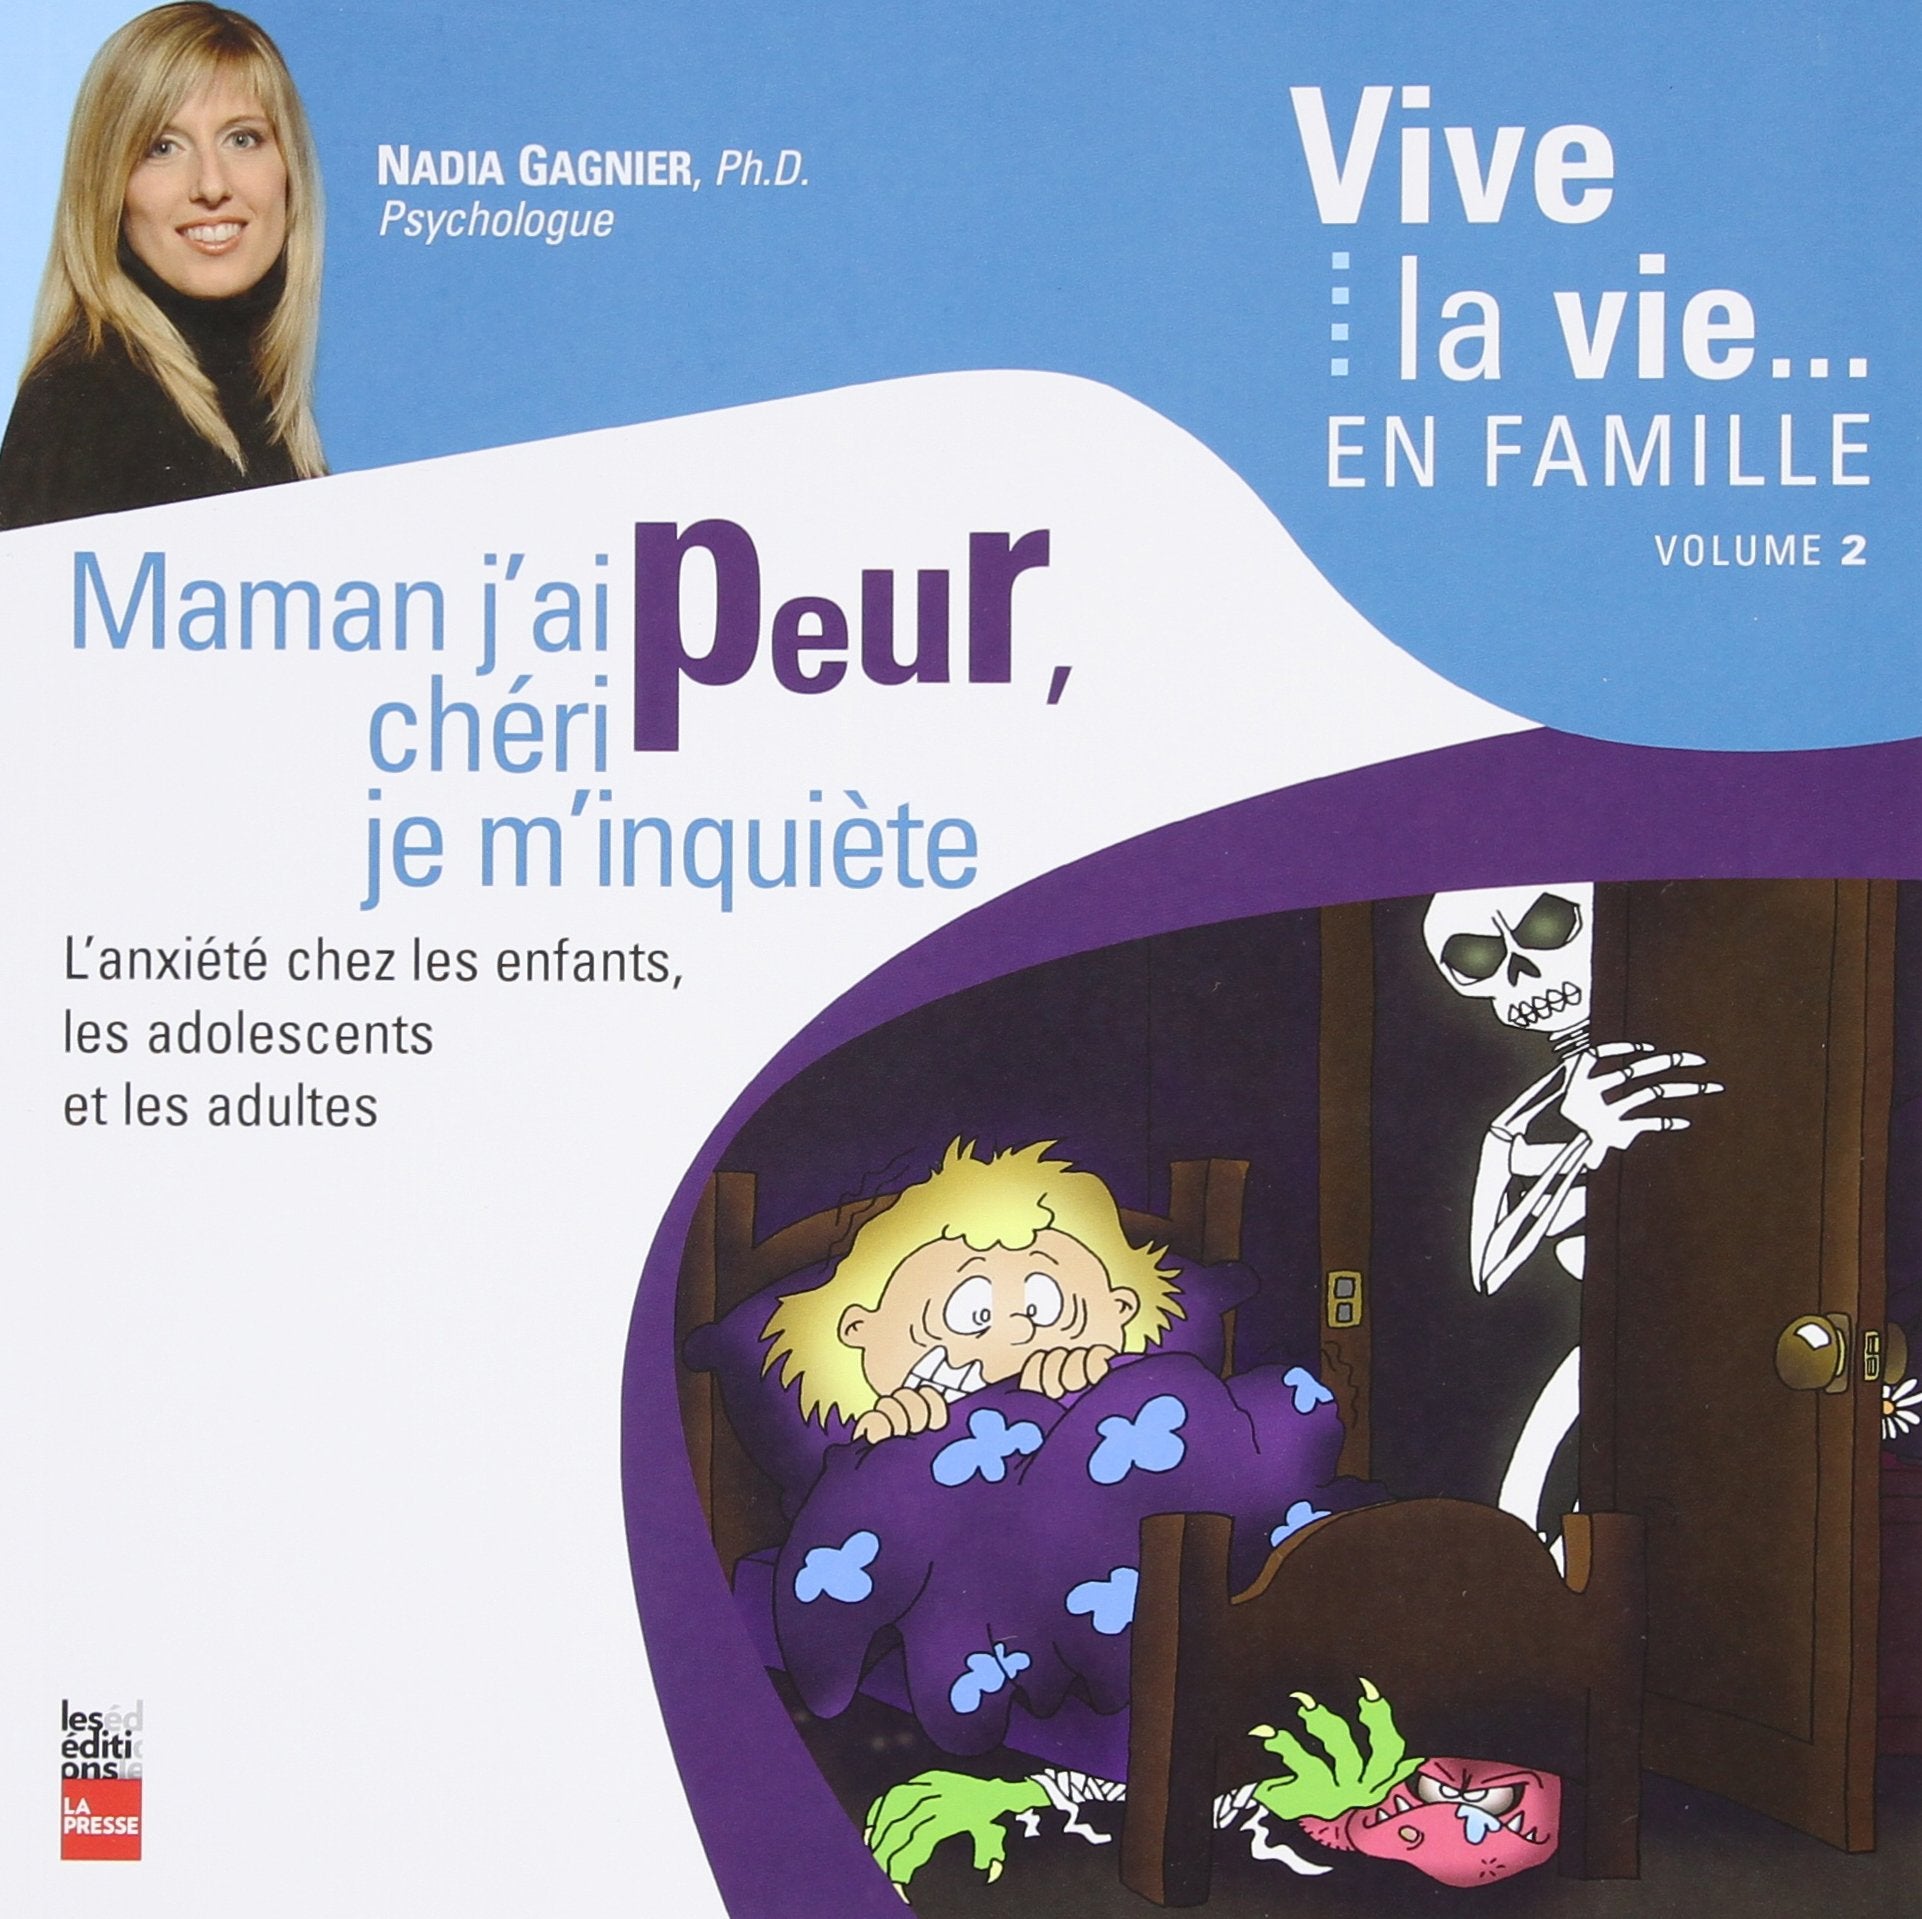 Livre ISBN 2923194330 Vive la vie... en famille # 2 : Maman j'ai peur, chéri je m'inquière : l'anxiété chez les enfants, les adolescents et les adultes (Nadia Gagnier, Ph.D)